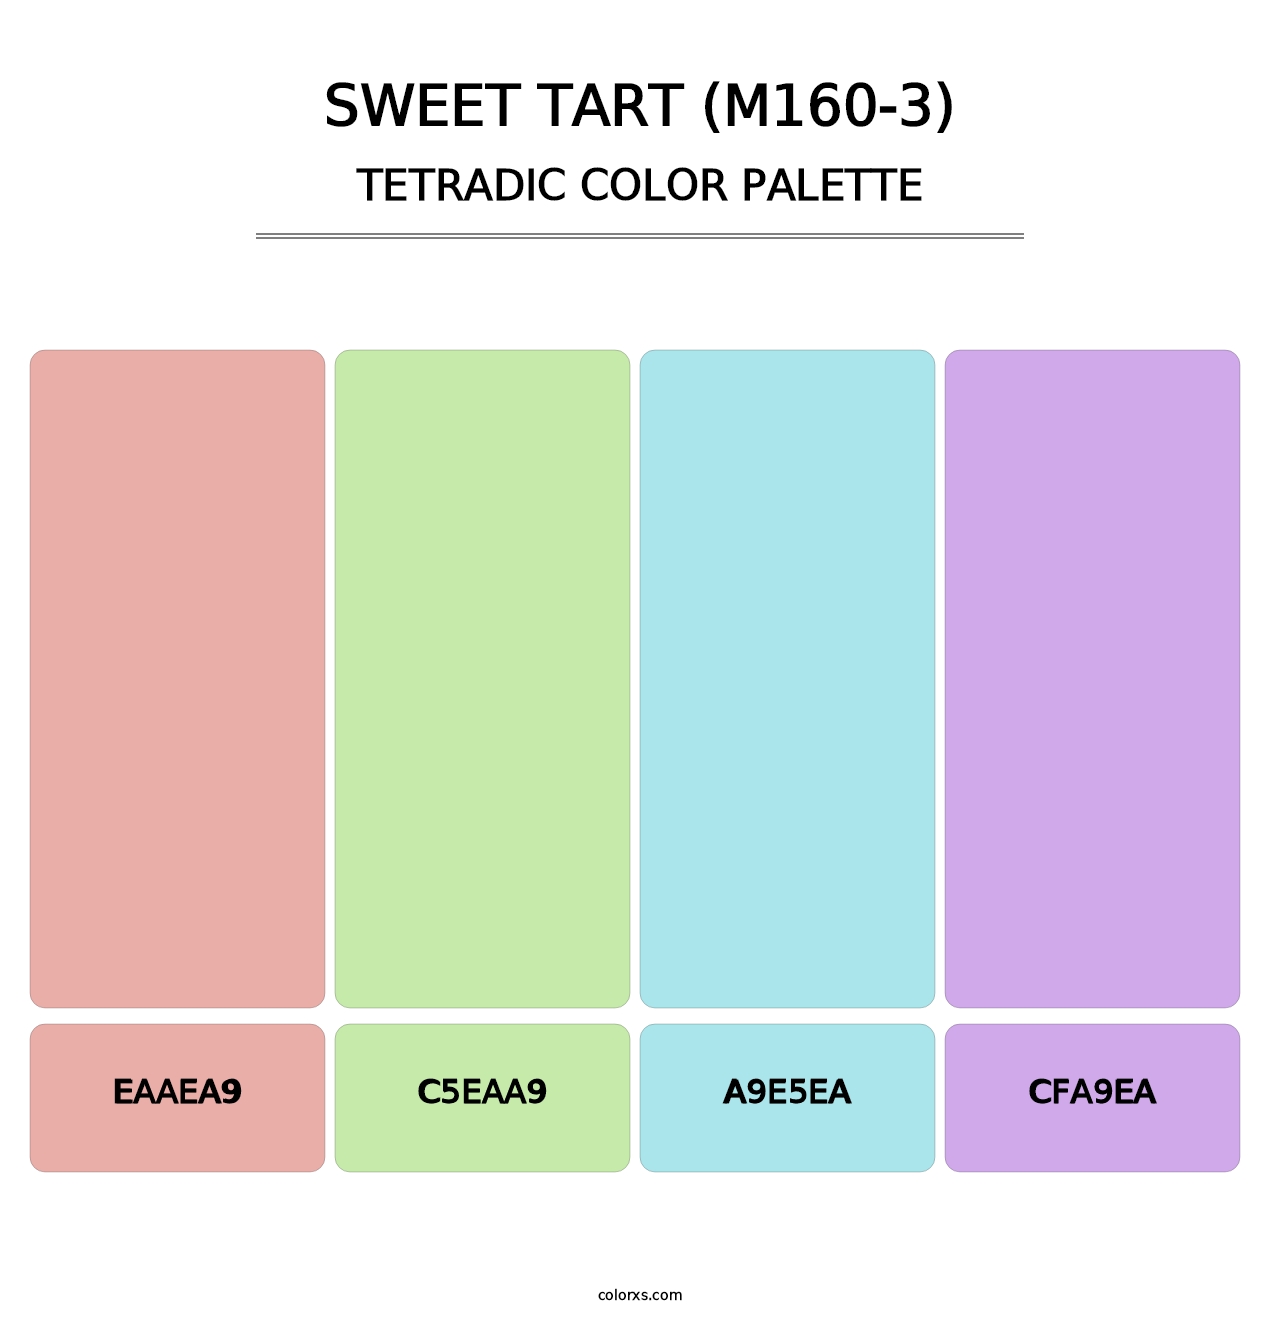 Sweet Tart (M160-3) - Tetradic Color Palette